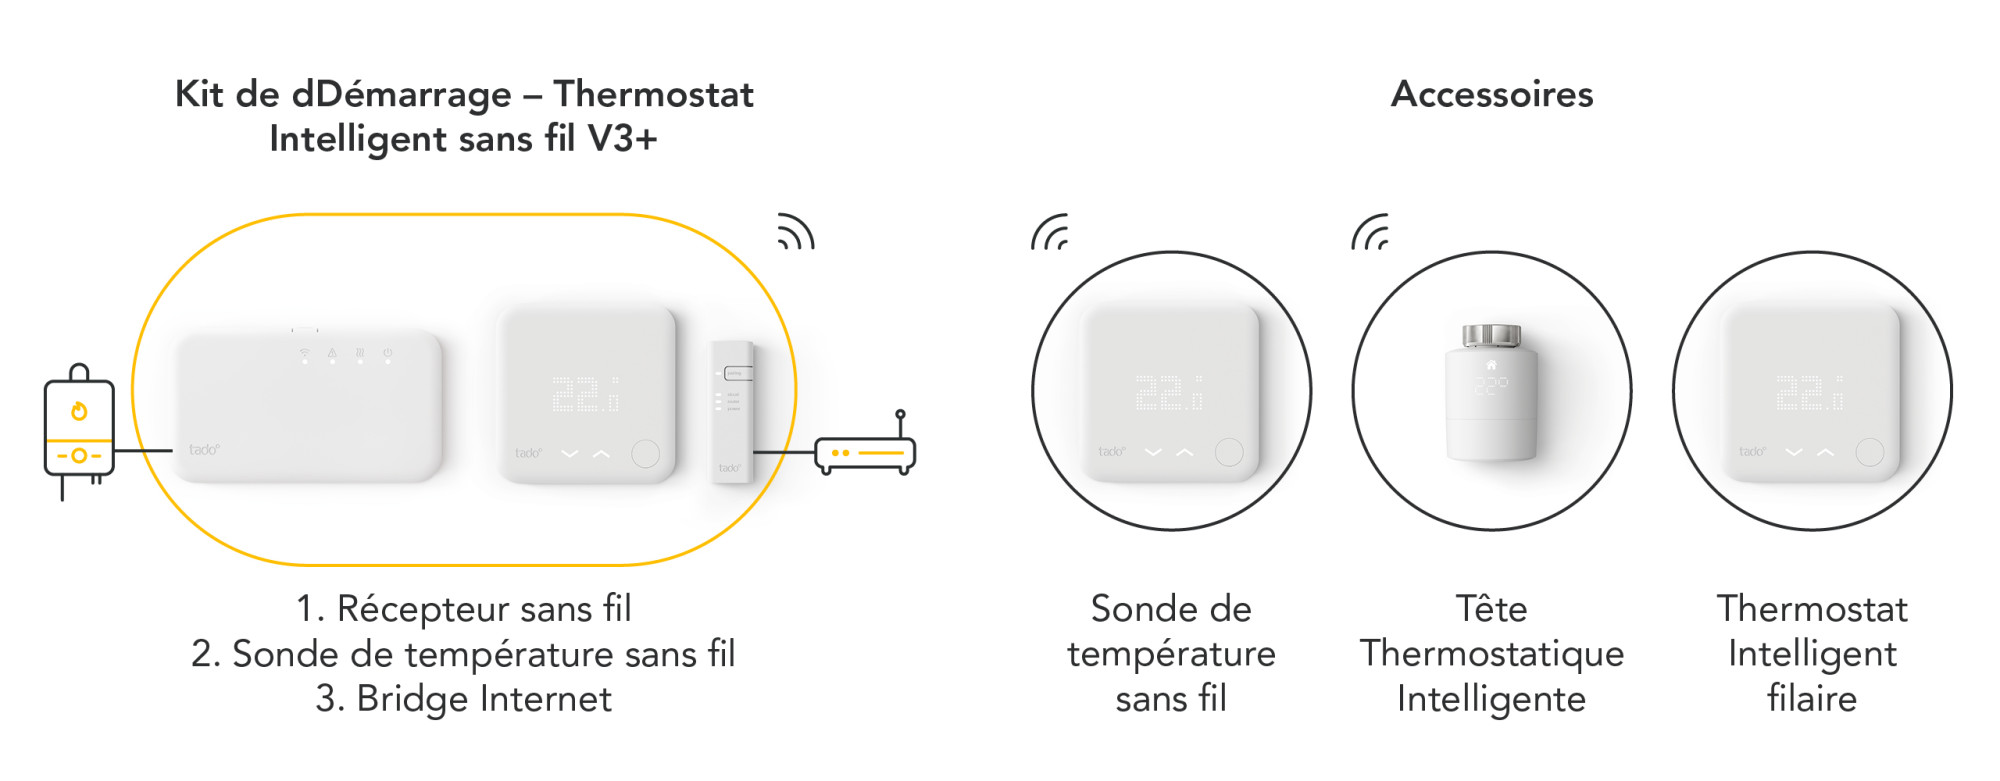 Tado Tête Thermostatique additionnelle - Thermostat connecté - Garantie 3  ans LDLC